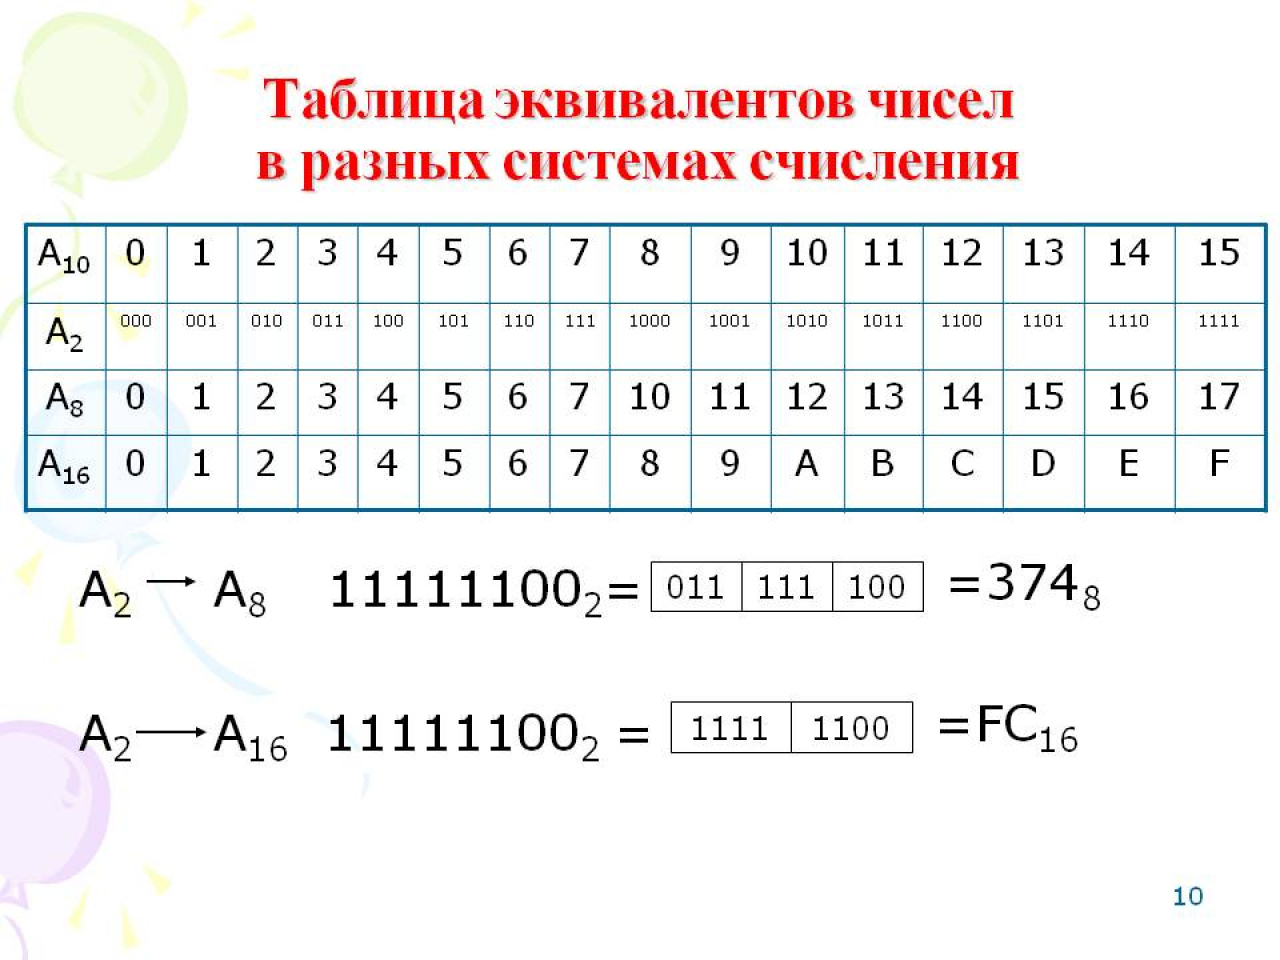 Таблица систем счисления